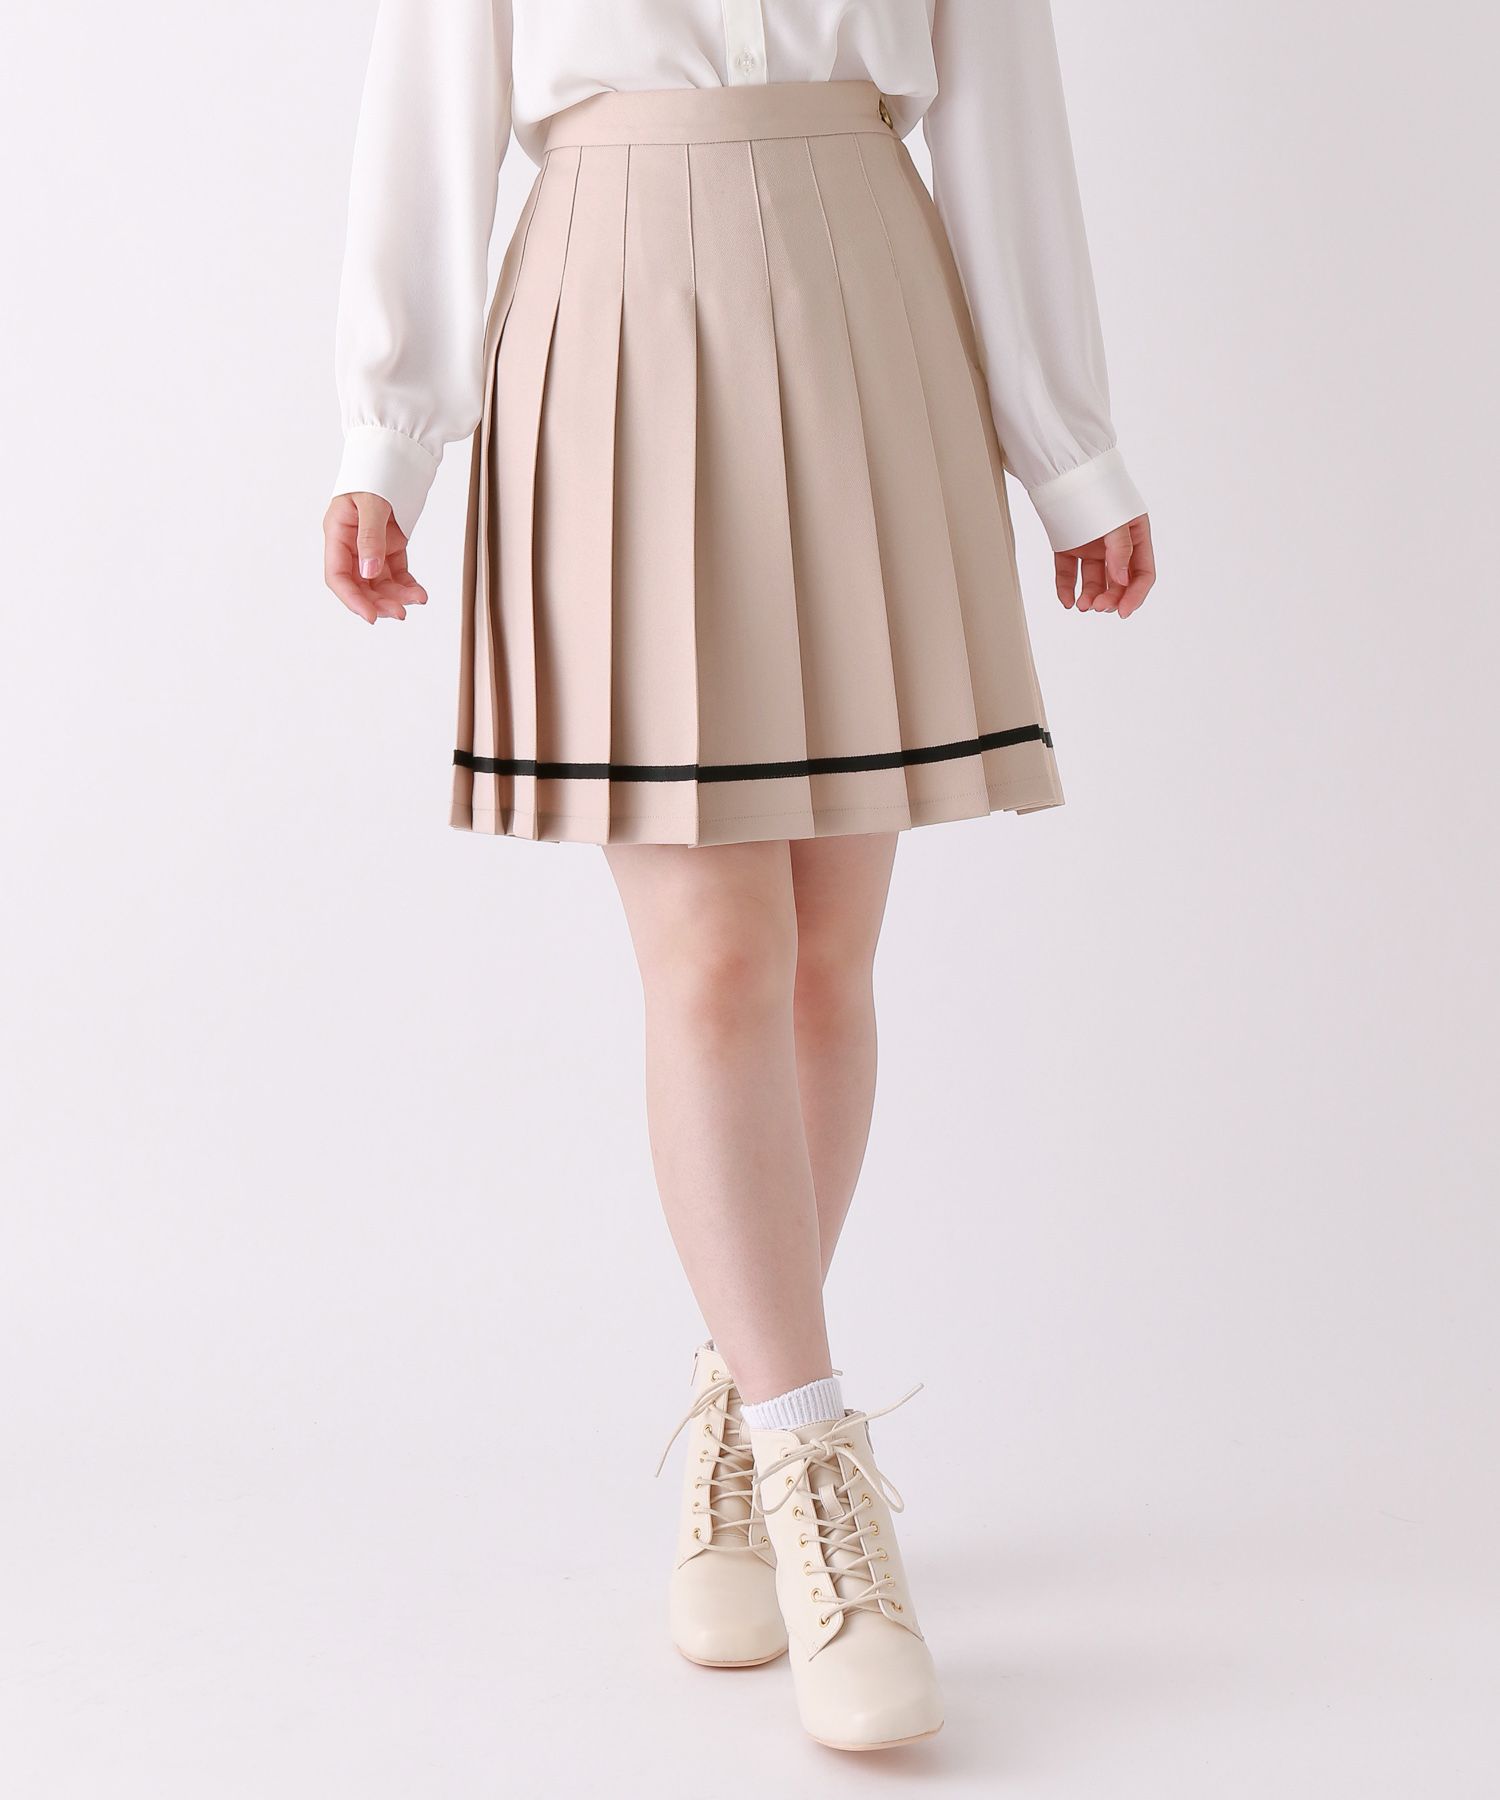 レピピアルマリオ☆スカートSサイズ150cm - スカート